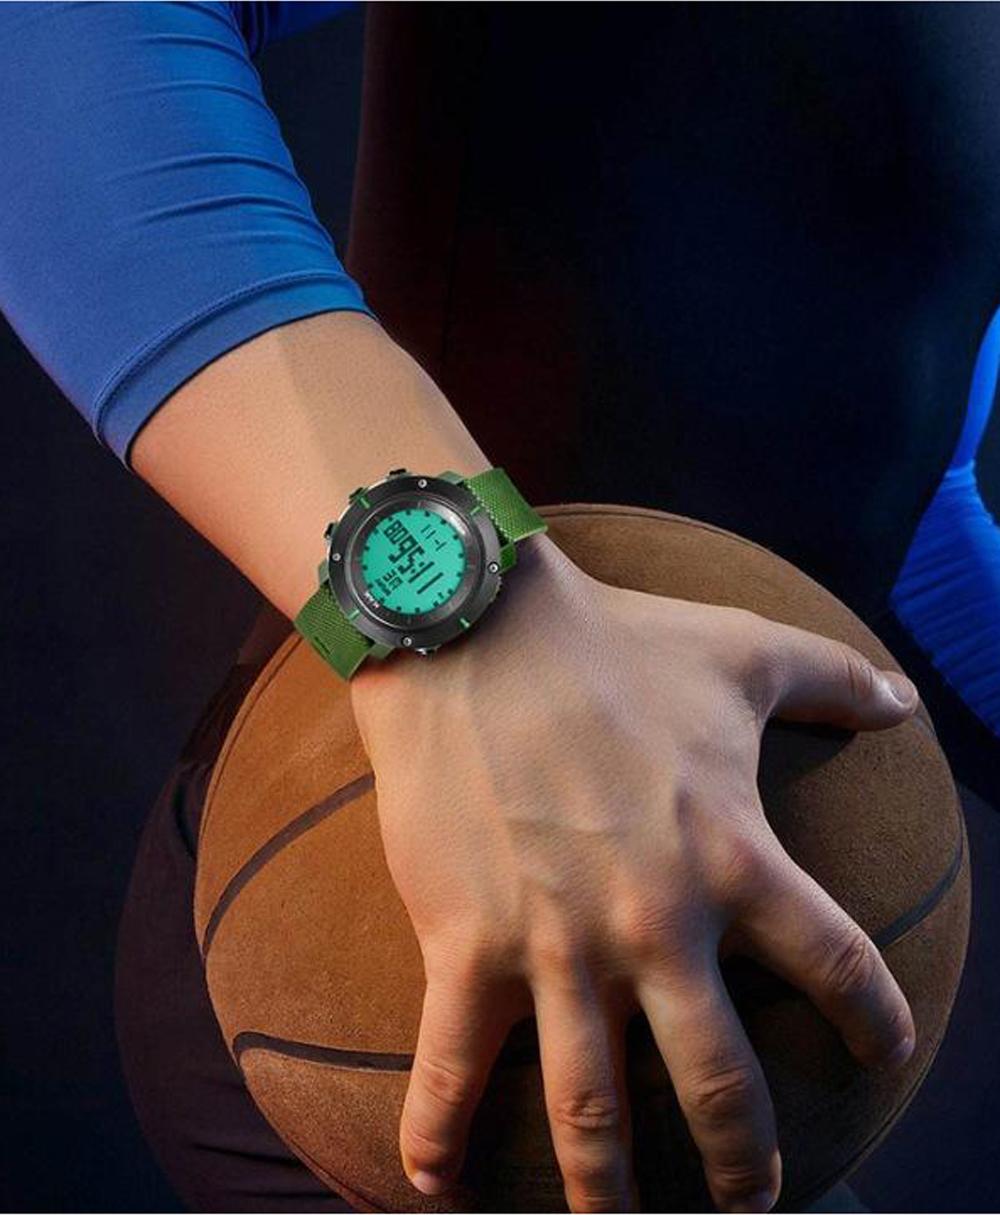 Đồng hồ thể thao nam đa chức năng cao cấp KAK, mặt kính cứng, dây cao su mềm mại, có độ chống xước, chống nước, size 50